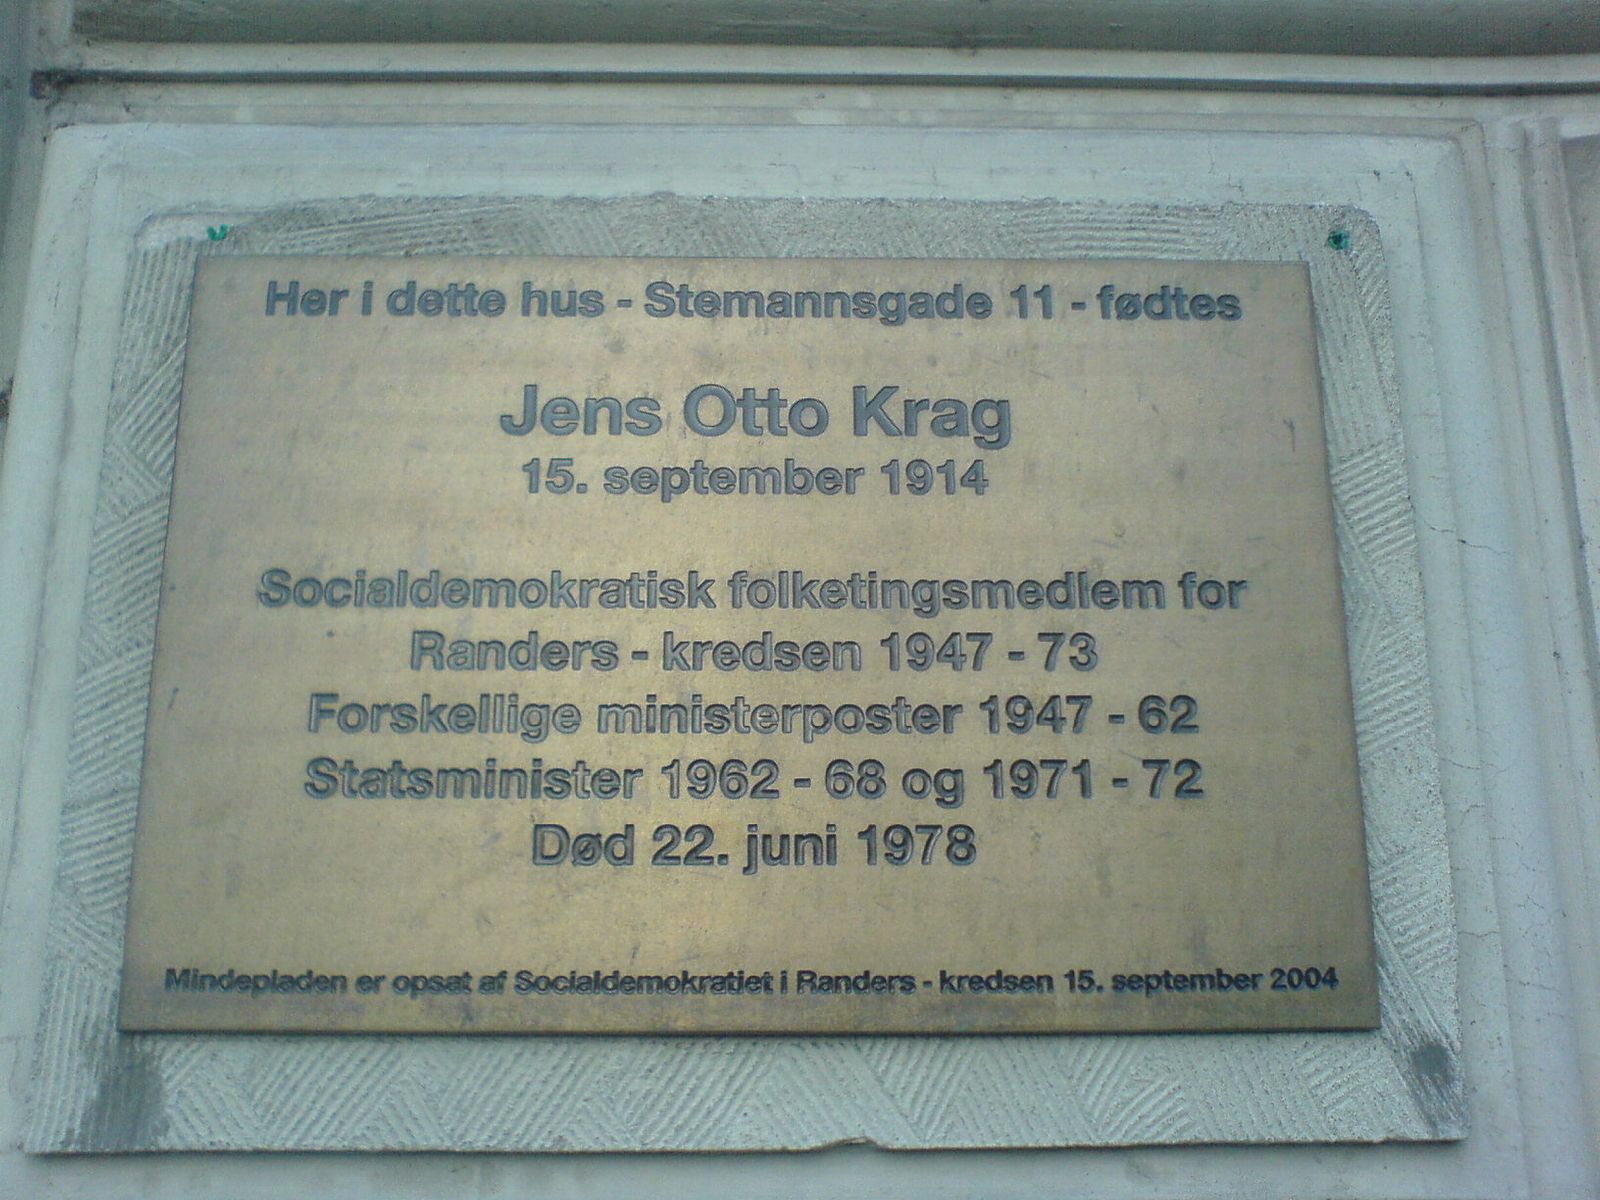 Mindepladen for Jens Otto Krags fødehjem i Randers. Foto taget 14 November 2006 af Esben Fjord fra København. (CC BY-SA 2.0).